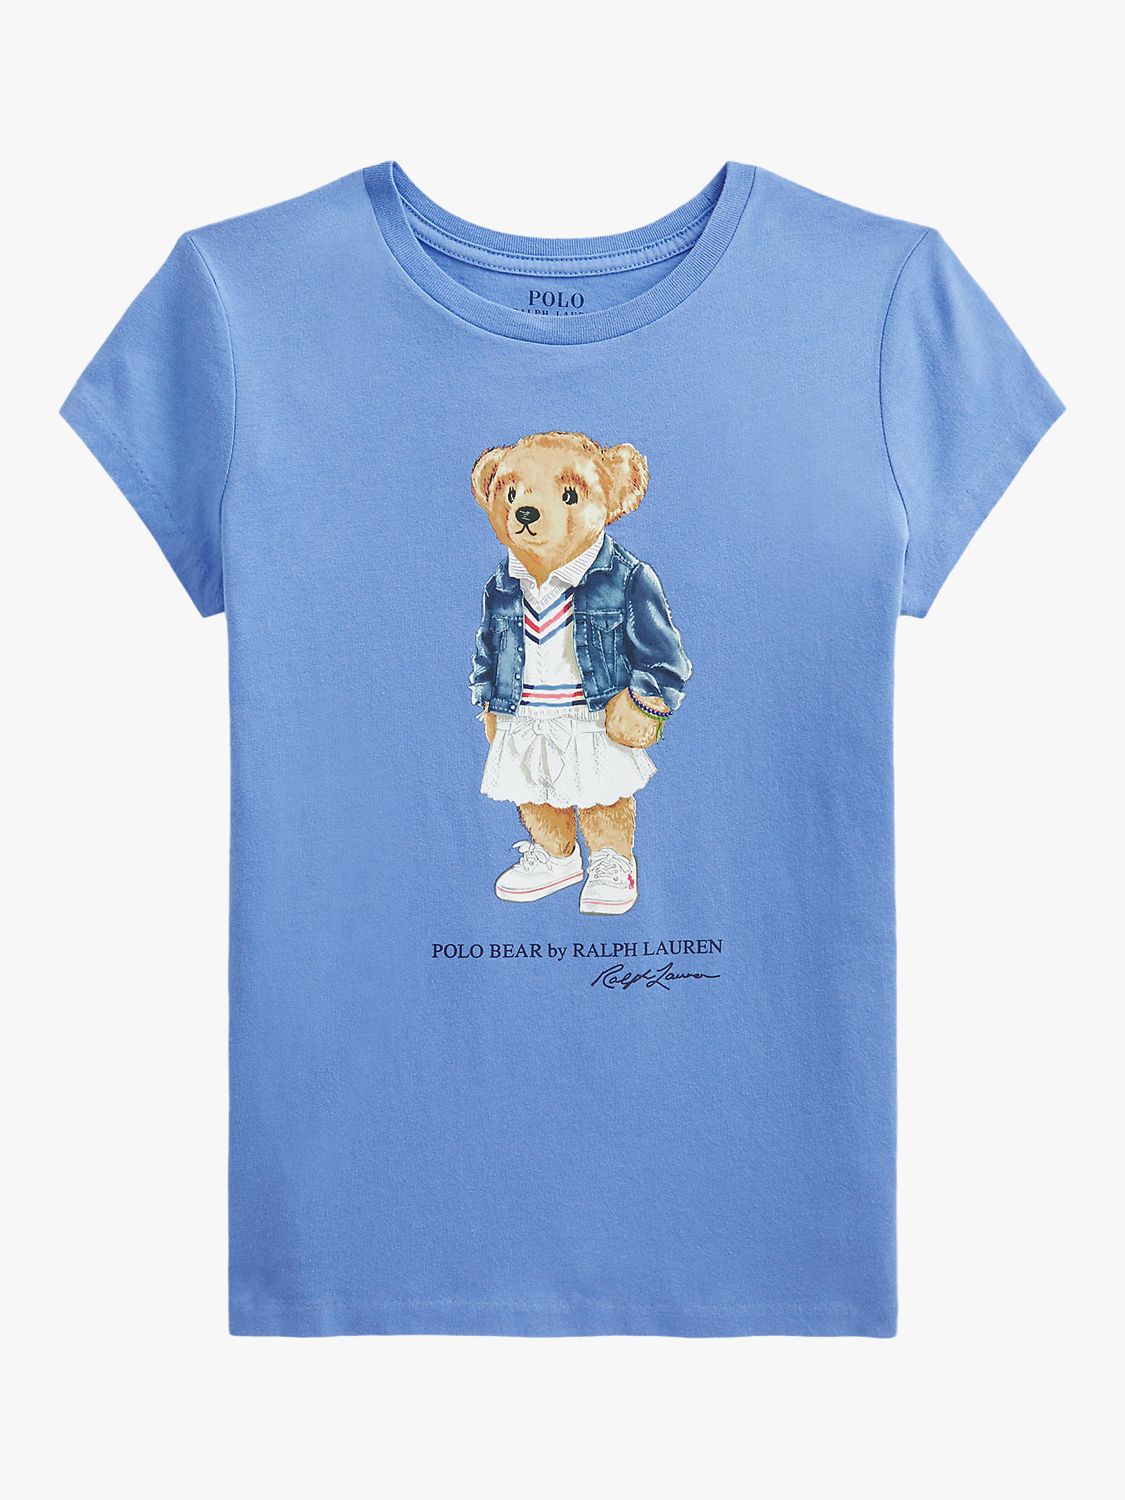 Ralph Lauren Kids' Polo Bear Logo T-Shirt, Blue